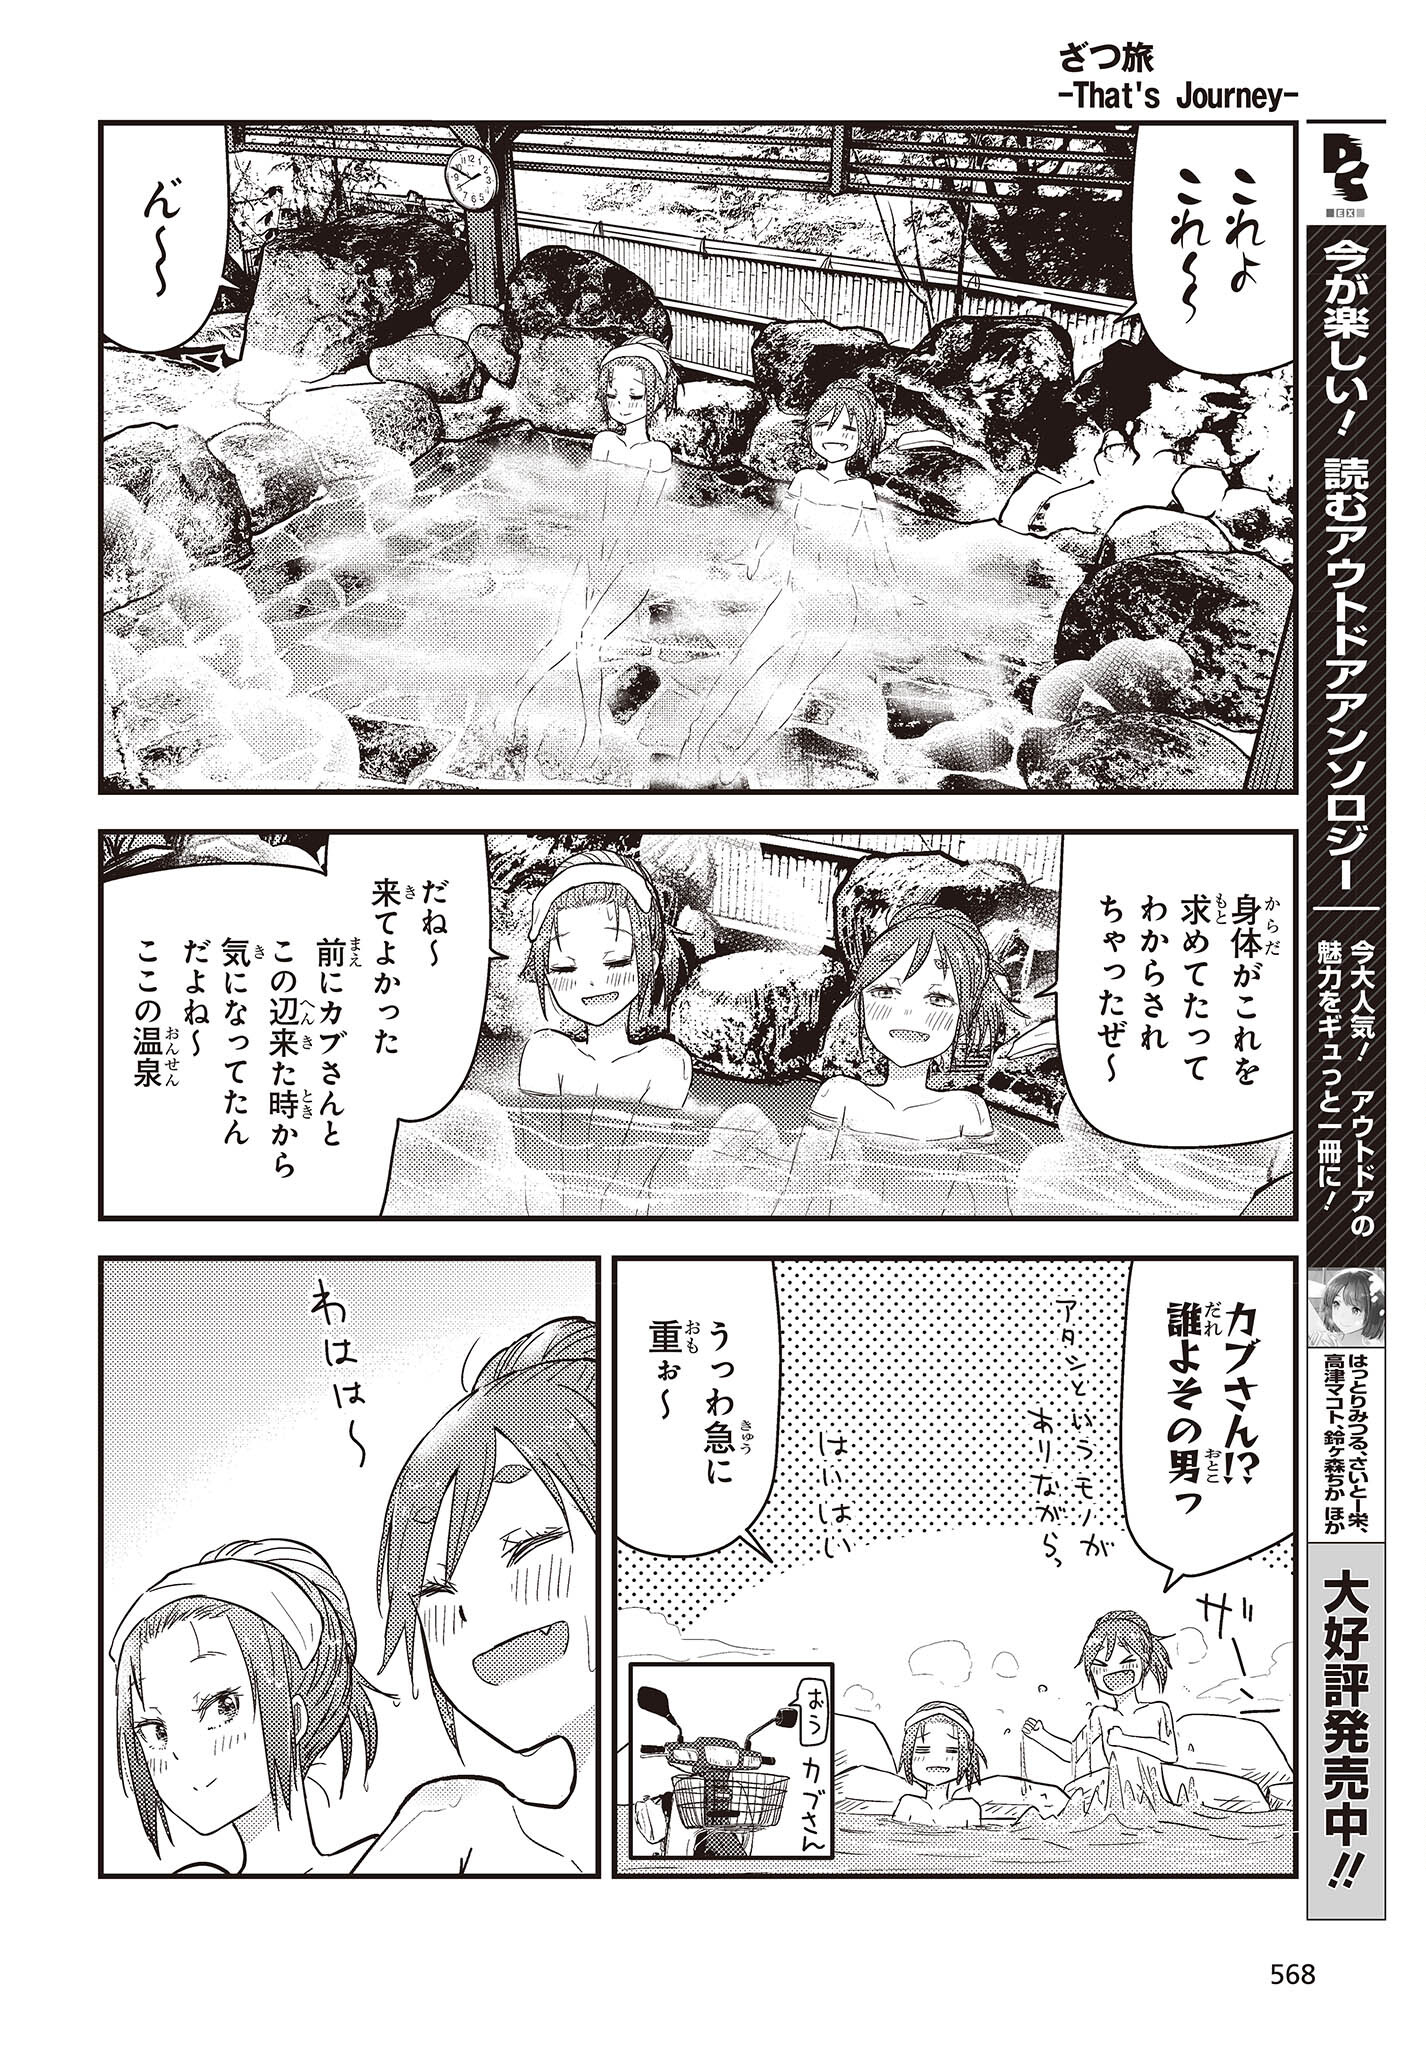 ざつ旅-That’s Journey- 第26.2話 - Page 10